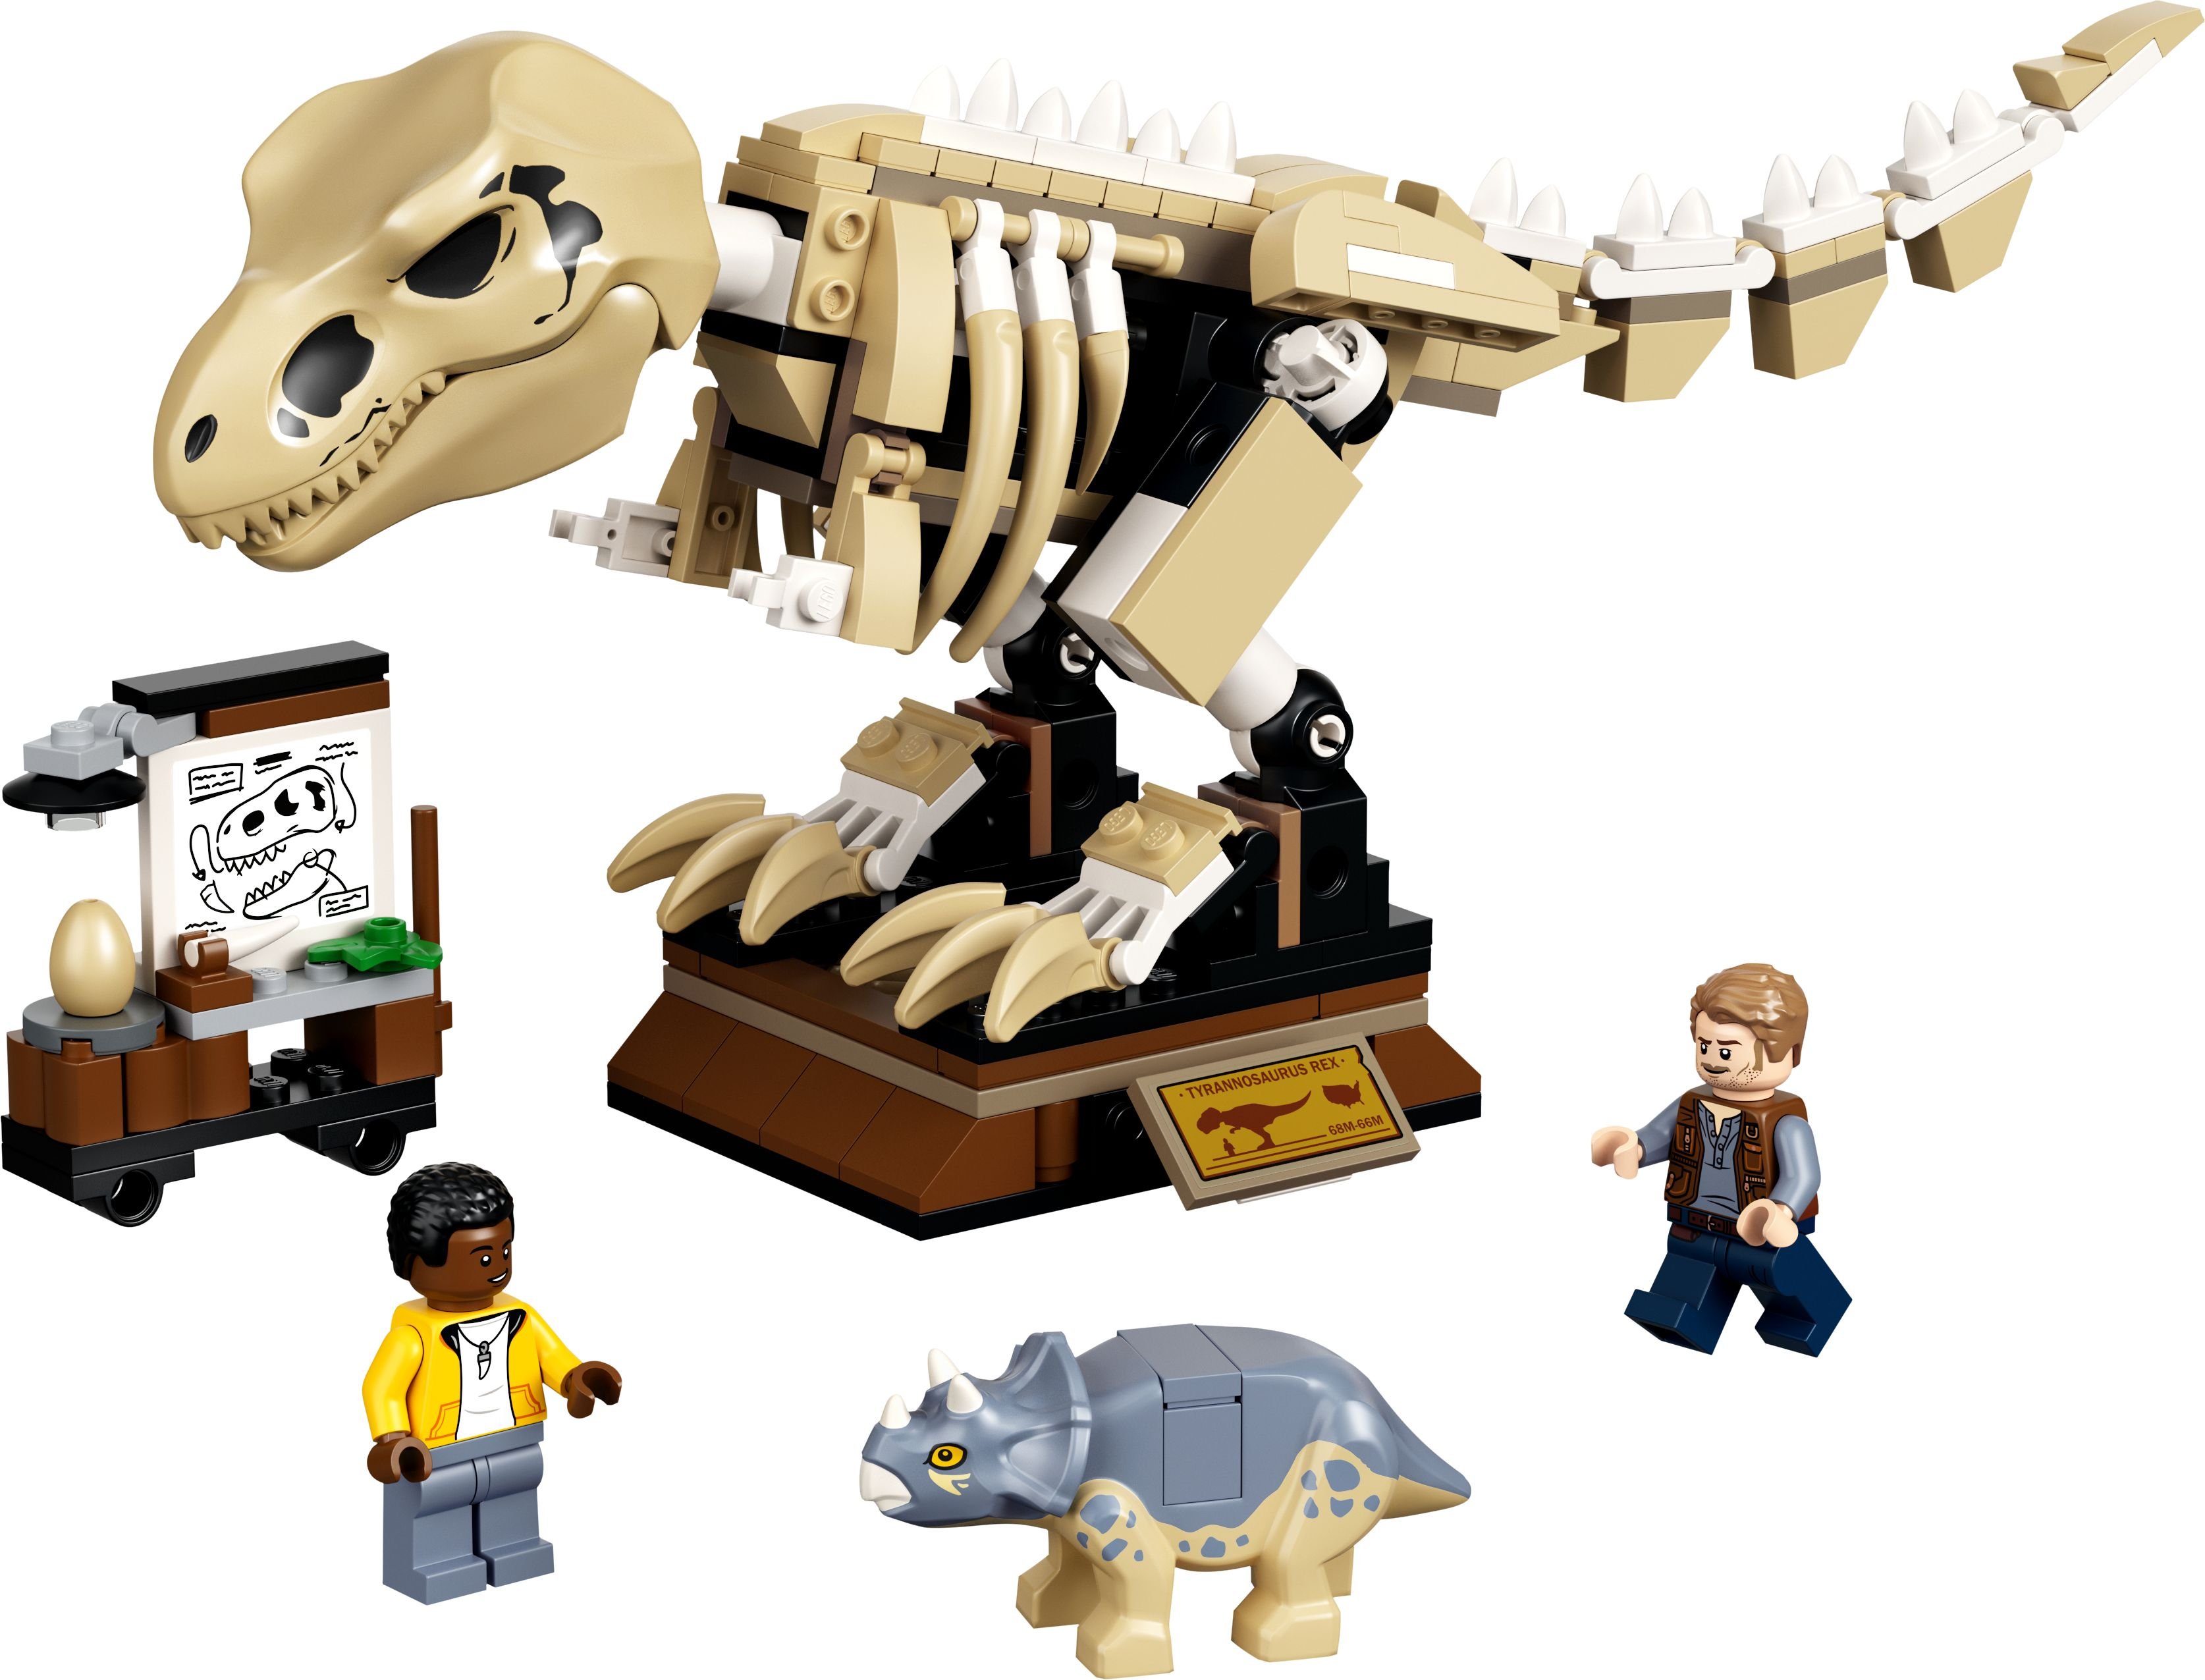 LEGO Jurassic World 76940 T. Rex-Skelett in der Fossilienausstellung